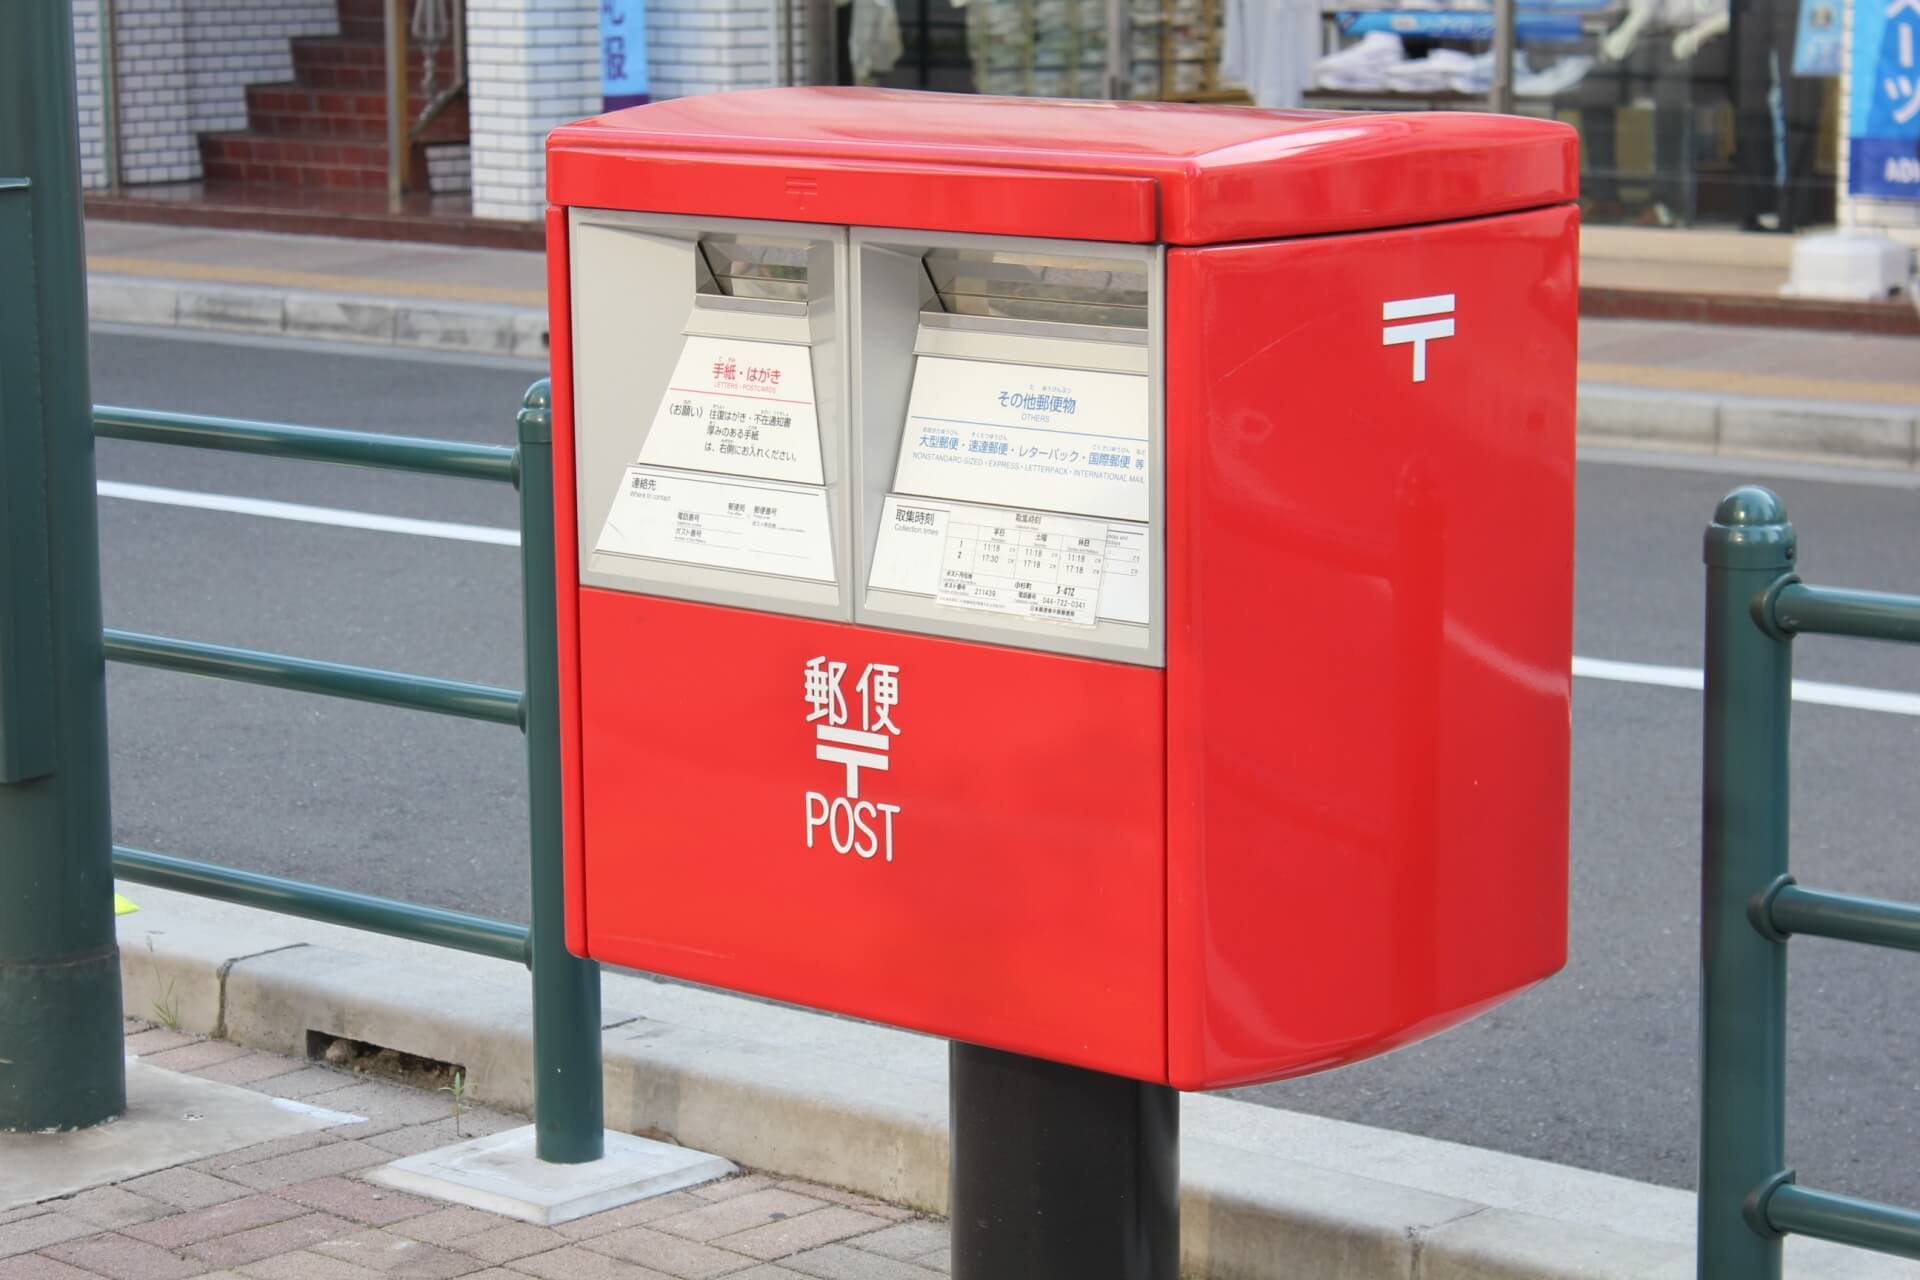 Box post. Почтовый ящик в Японии. Почтовый ящик в Китае. Почтовый ящик почты Японии. Postbox.